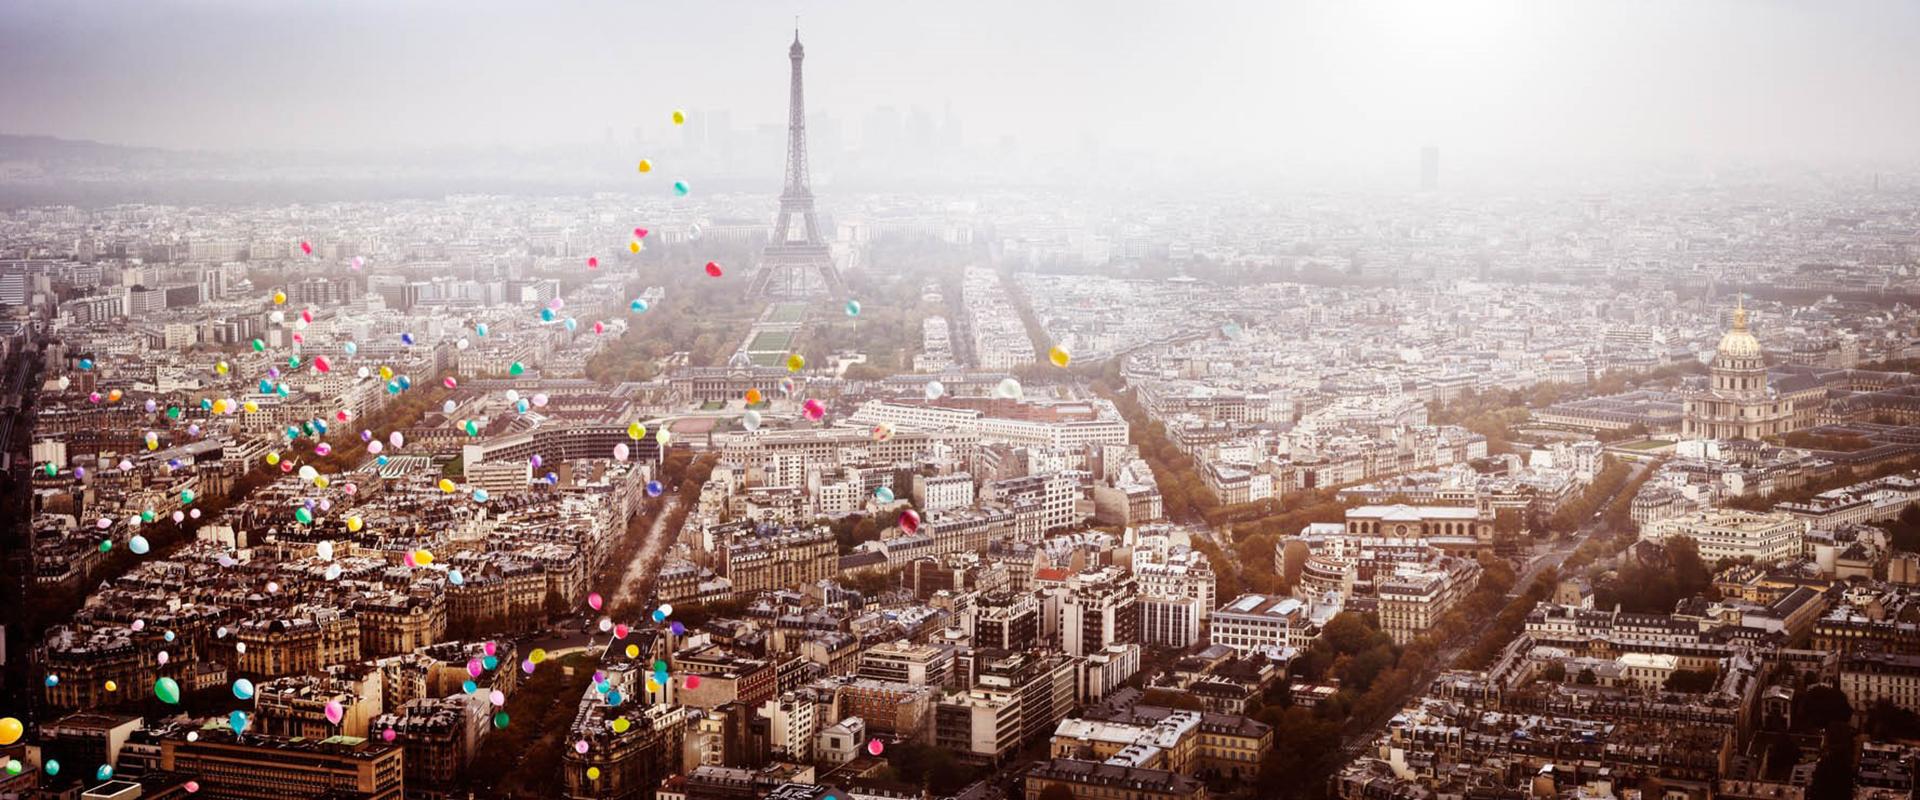 David Drebin Color Photograph – Balloons over Paris